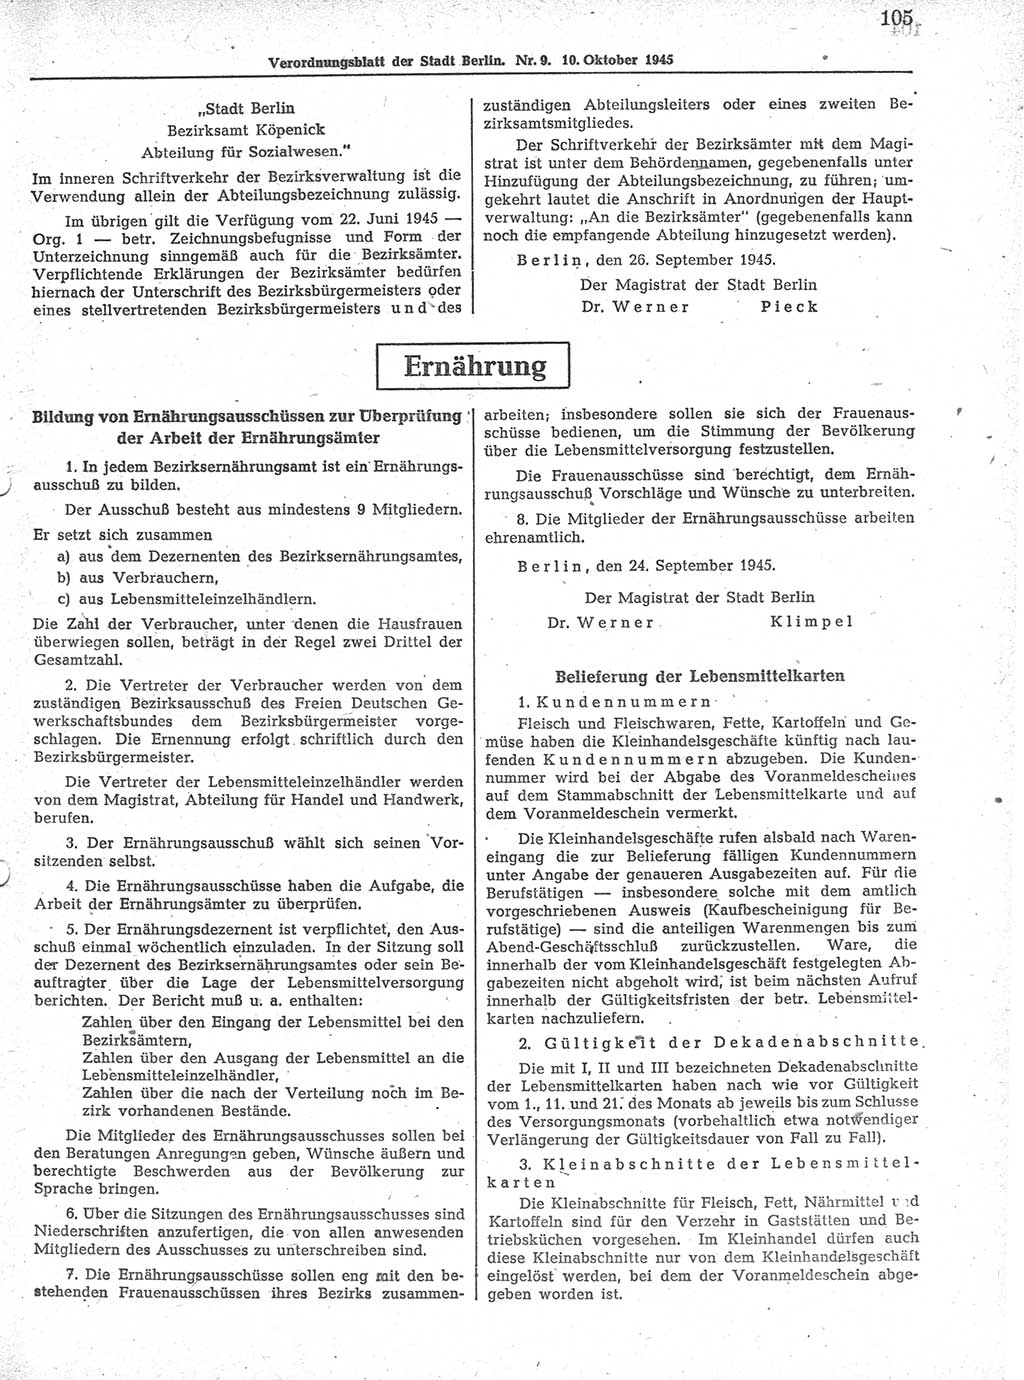 Verordnungsblatt (VOBl.) der Stadt Berlin 1945, Seite 105 (VOBl. Bln. 1945, S. 105)